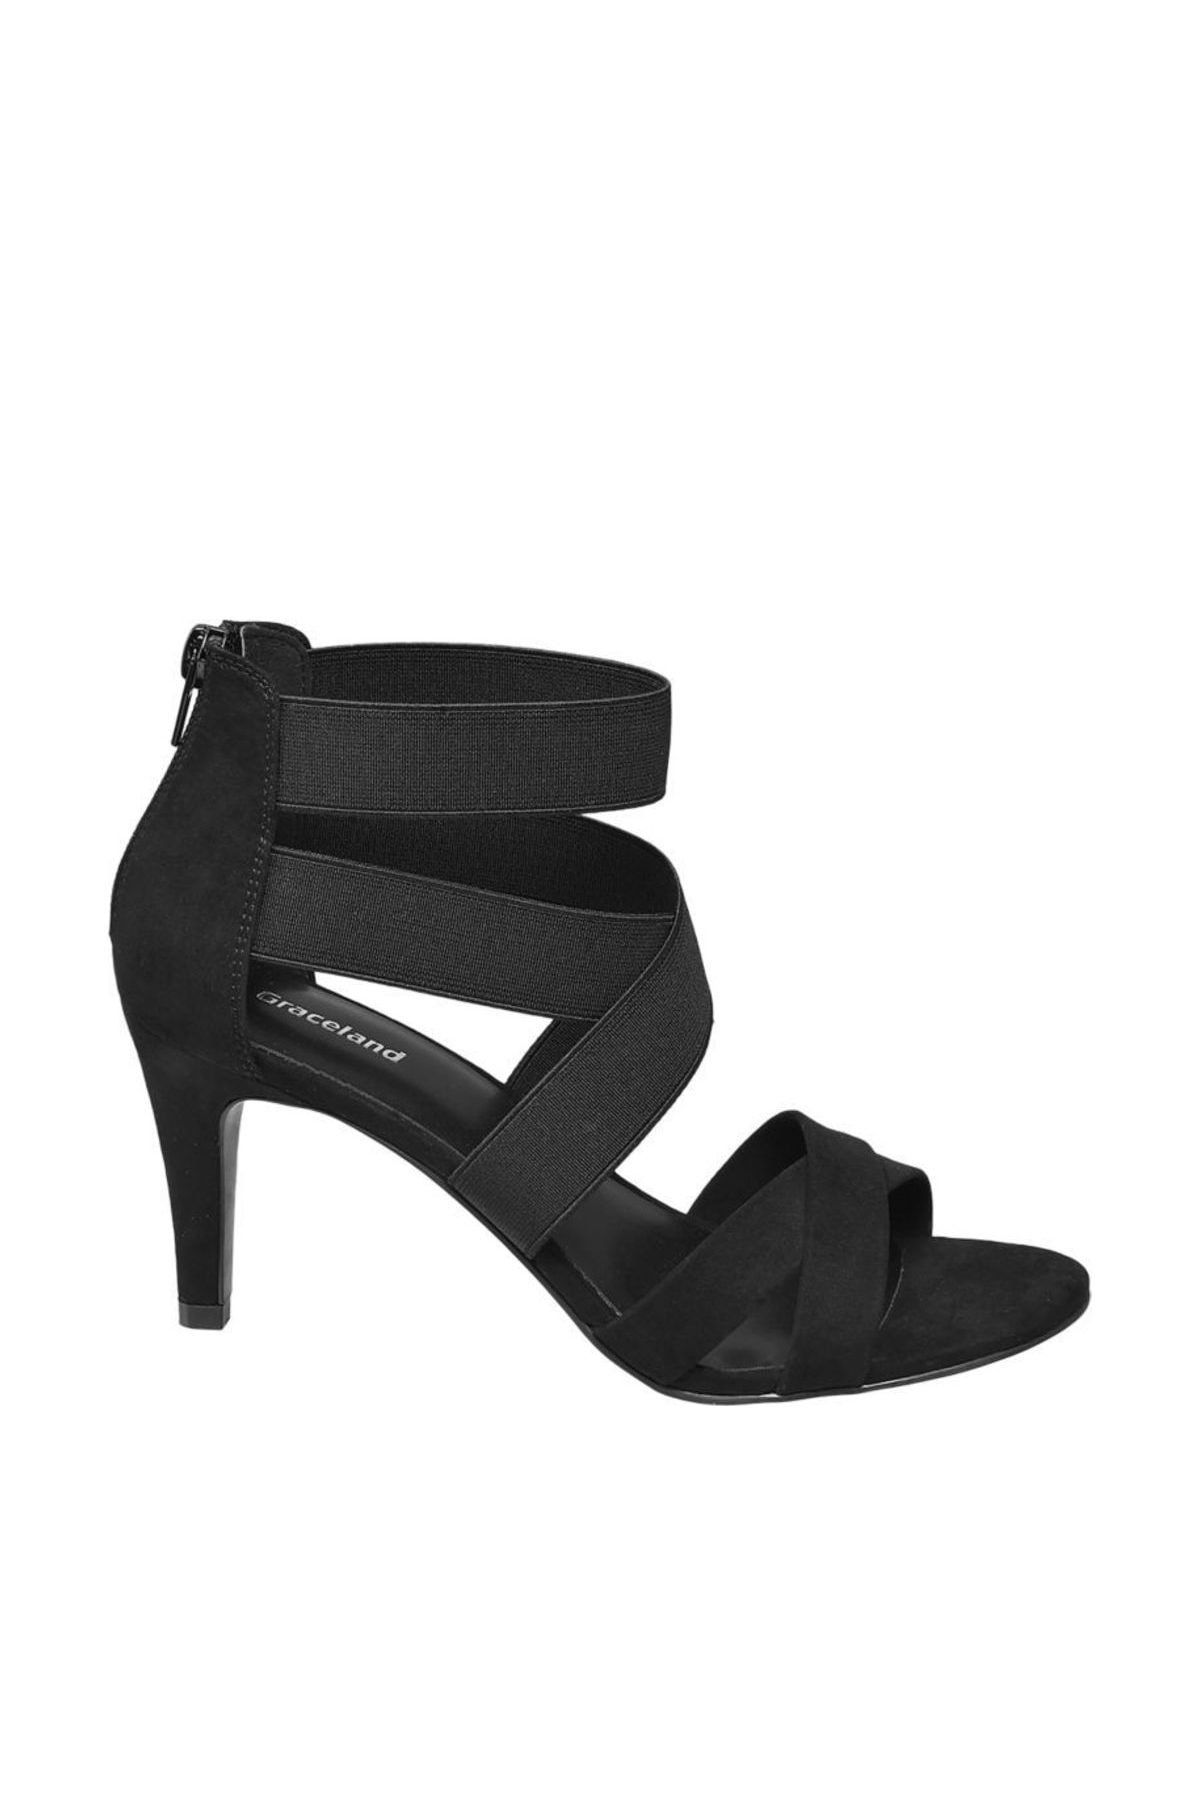 Graceland Deichmann Kadın Siyah Ayakkabı